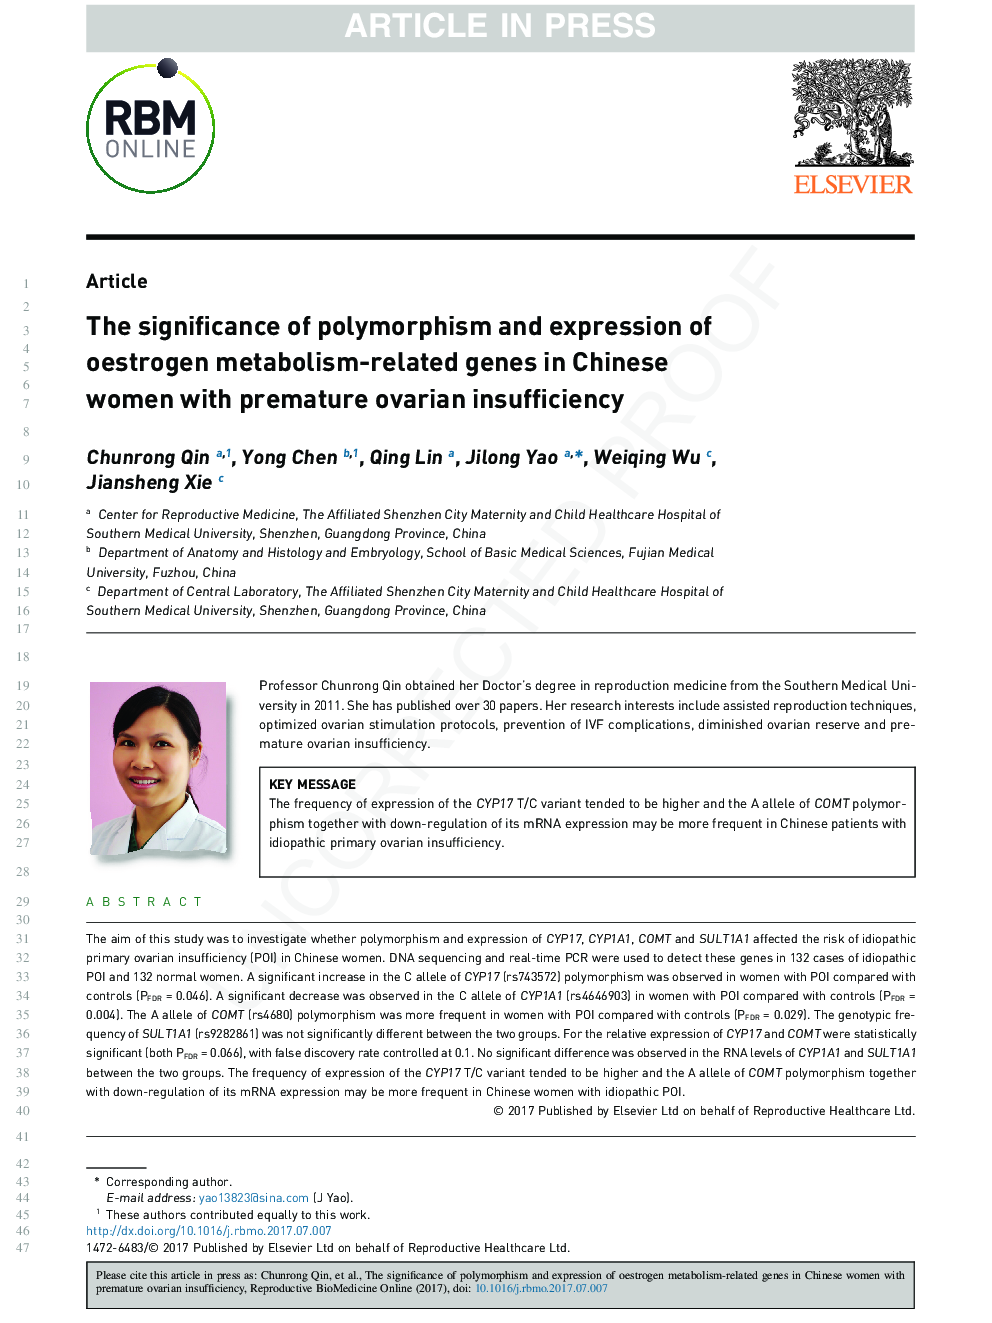 اهمیت پلی مورفیسم و ​​بیان ژن های مرتبط با متابولیسم استروژن در زنان چینی با نارسایی زودرس تخمدان 